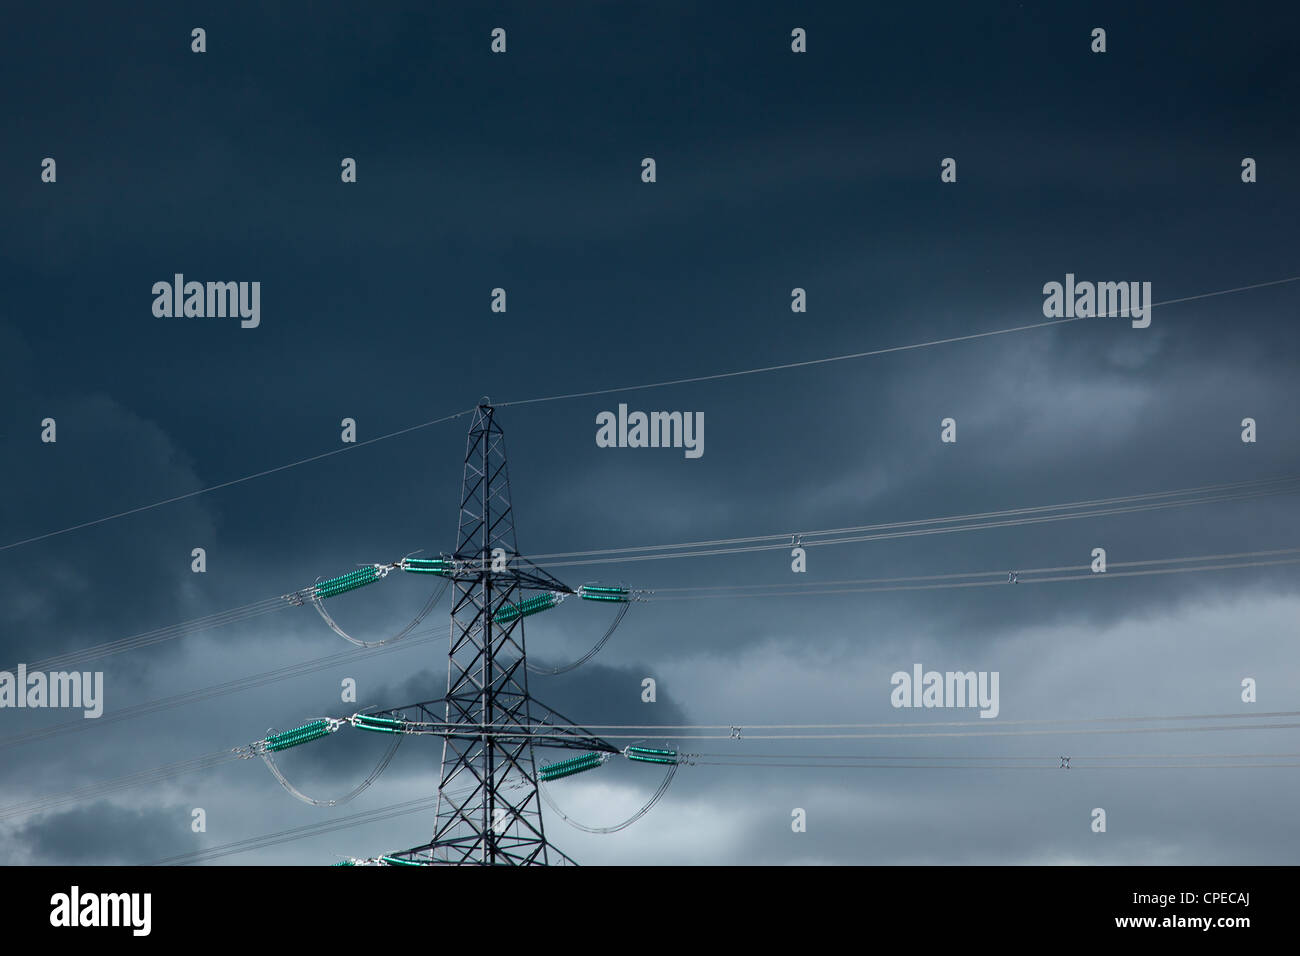 Poste eléctrico y cables de alimentación contra el oscuro cielo tormentoso, Inglaterra Foto de stock